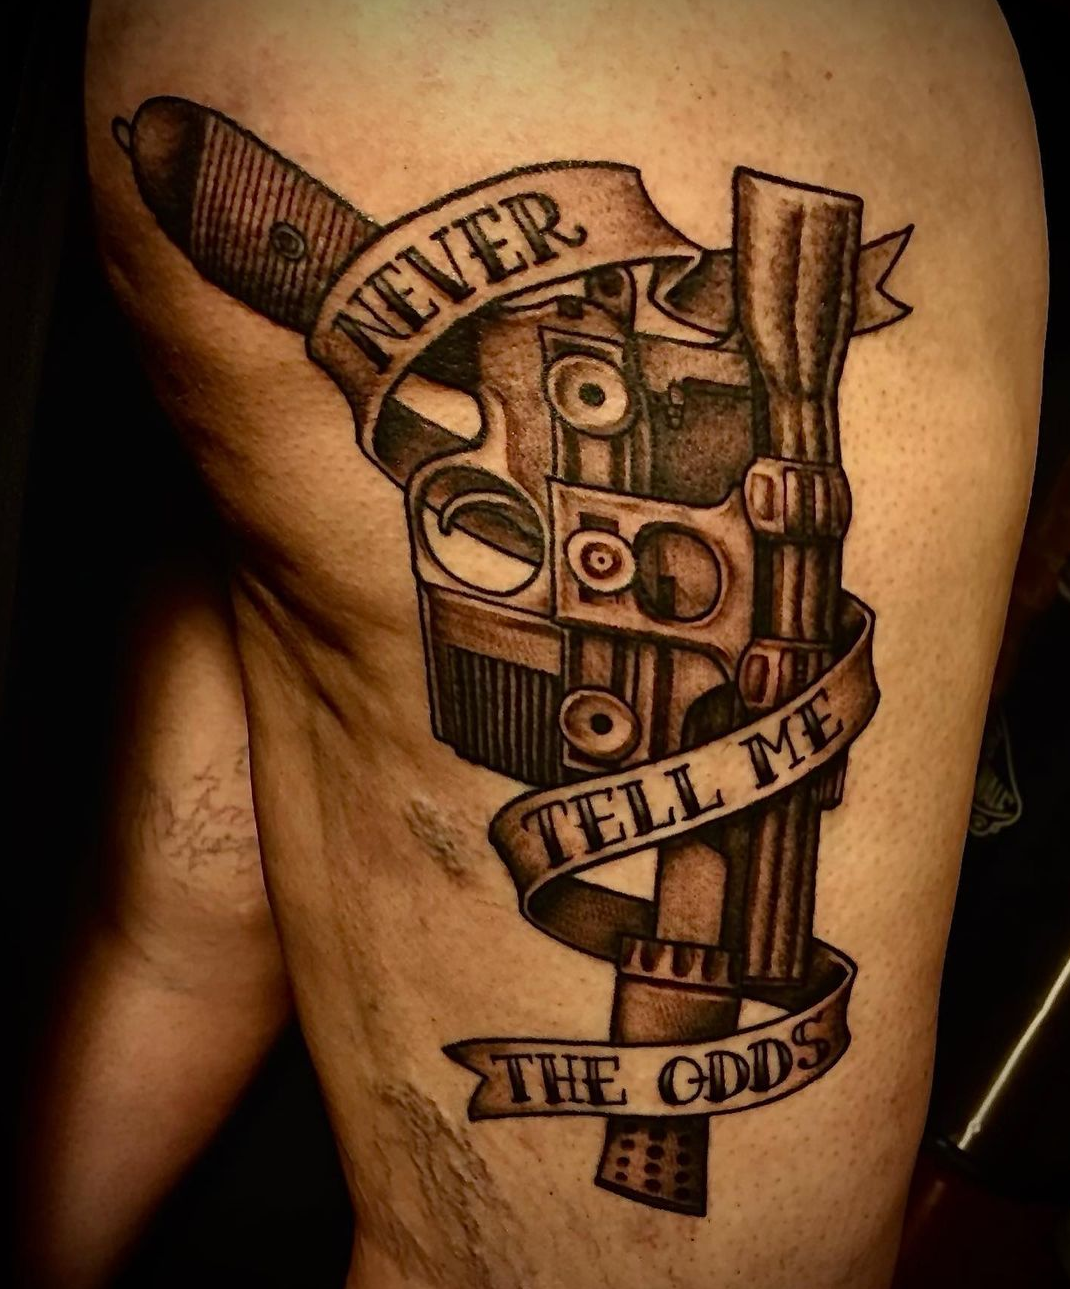 Tattoo of a gun from best tattoo artist in dallas